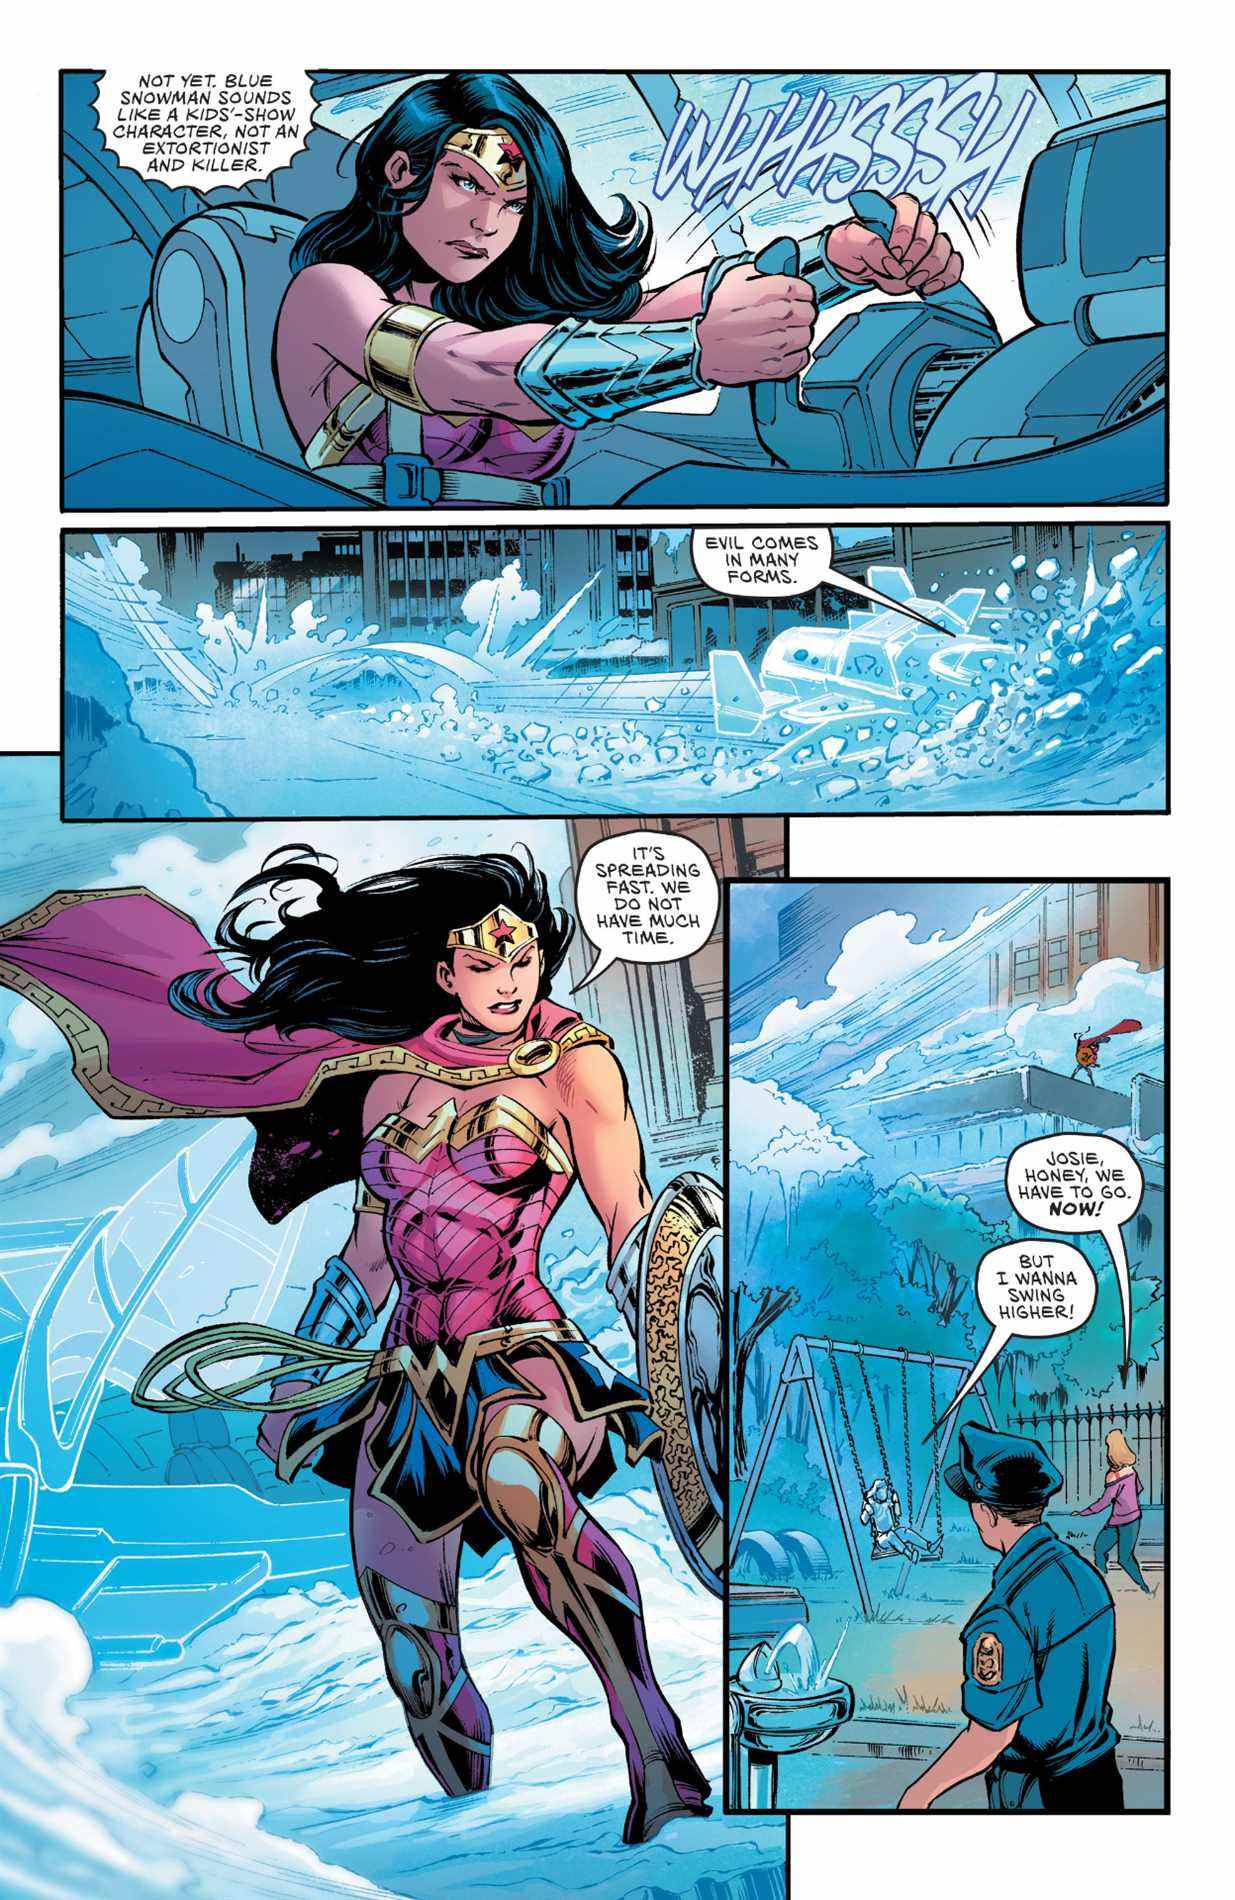 Sensationnel Wonder Woman spécial # 1